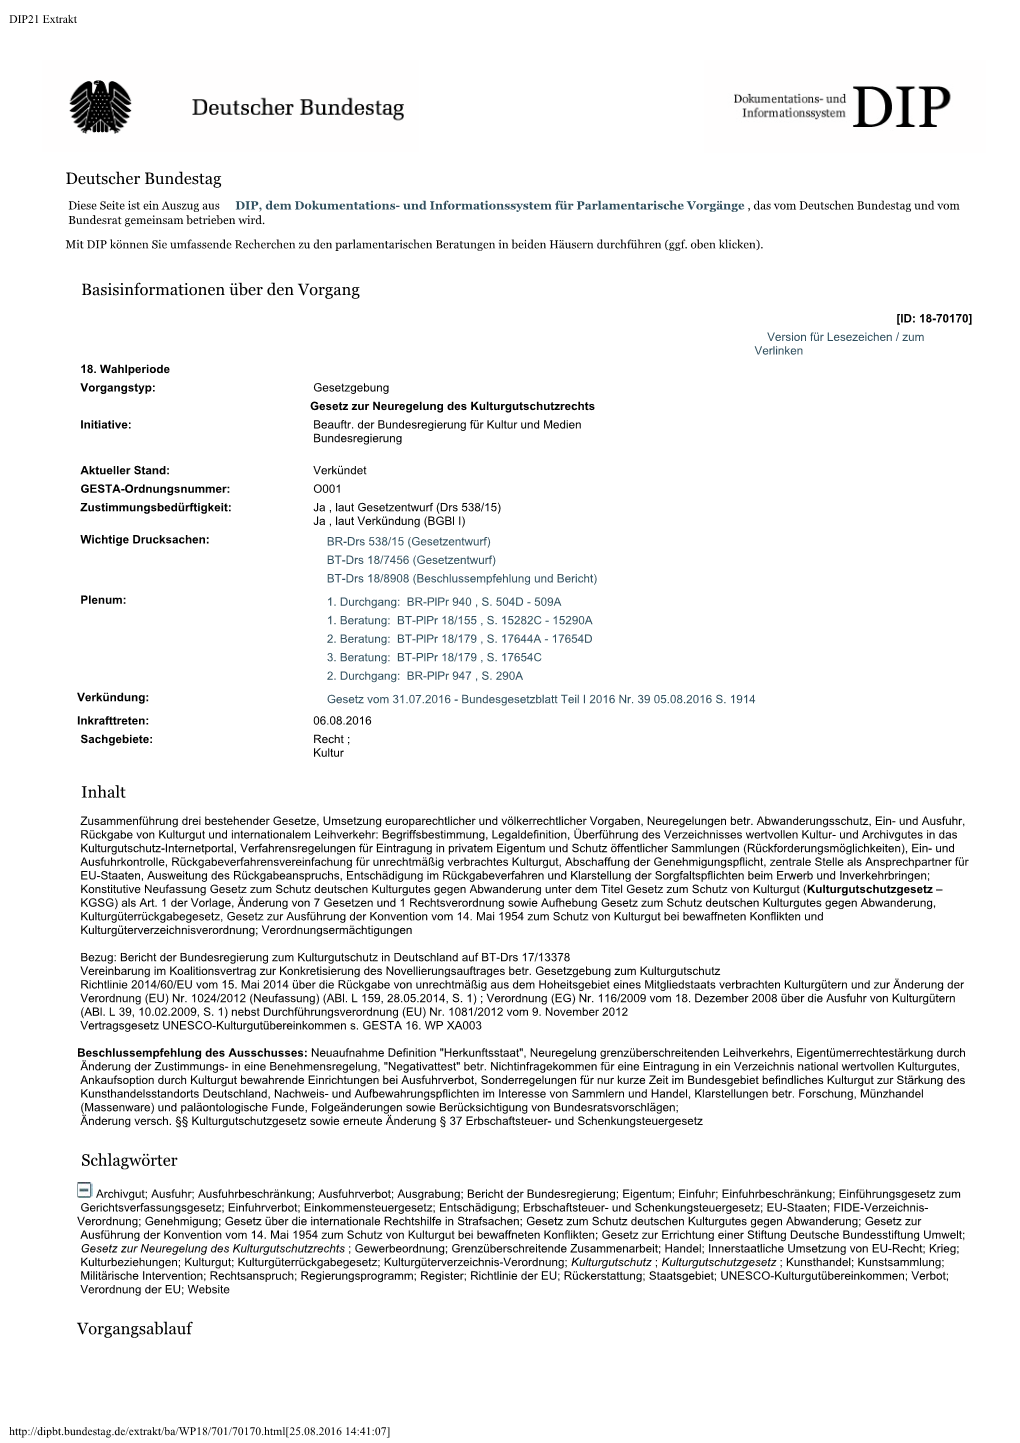 Parlamentsmaterialien Beim DIP (PDF, 42KB